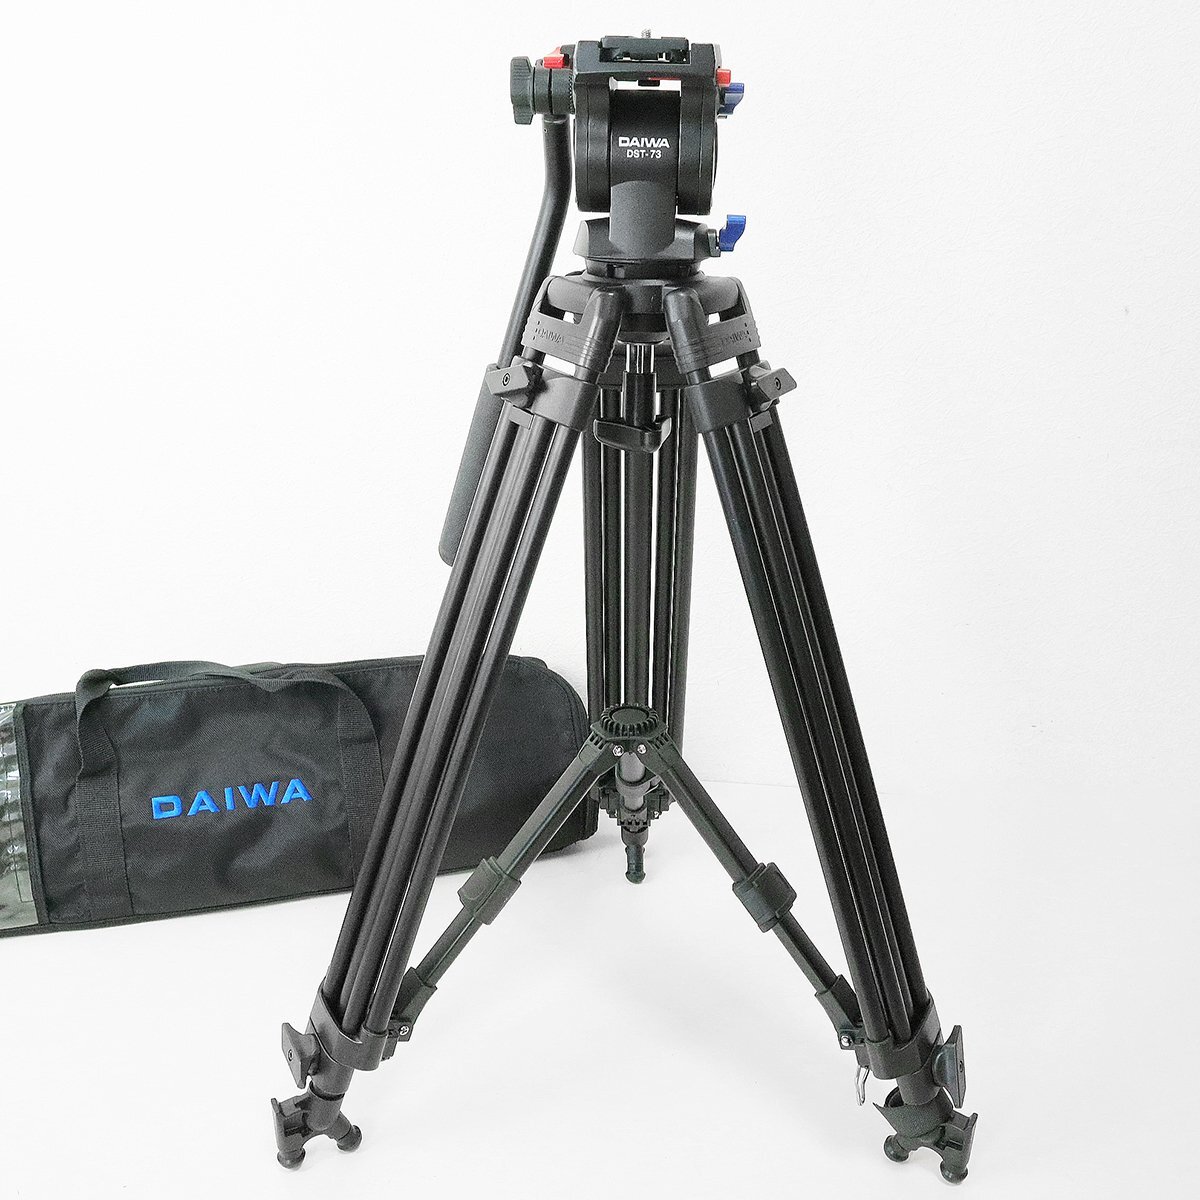 DAIWA Daiwa * штатив DST-73 видео камера для ( максимальный примерно 158cm 3 уровень подходящий нагрузка 4kg ) для бизнеса профессиональный место хранения с футляром *4/KK